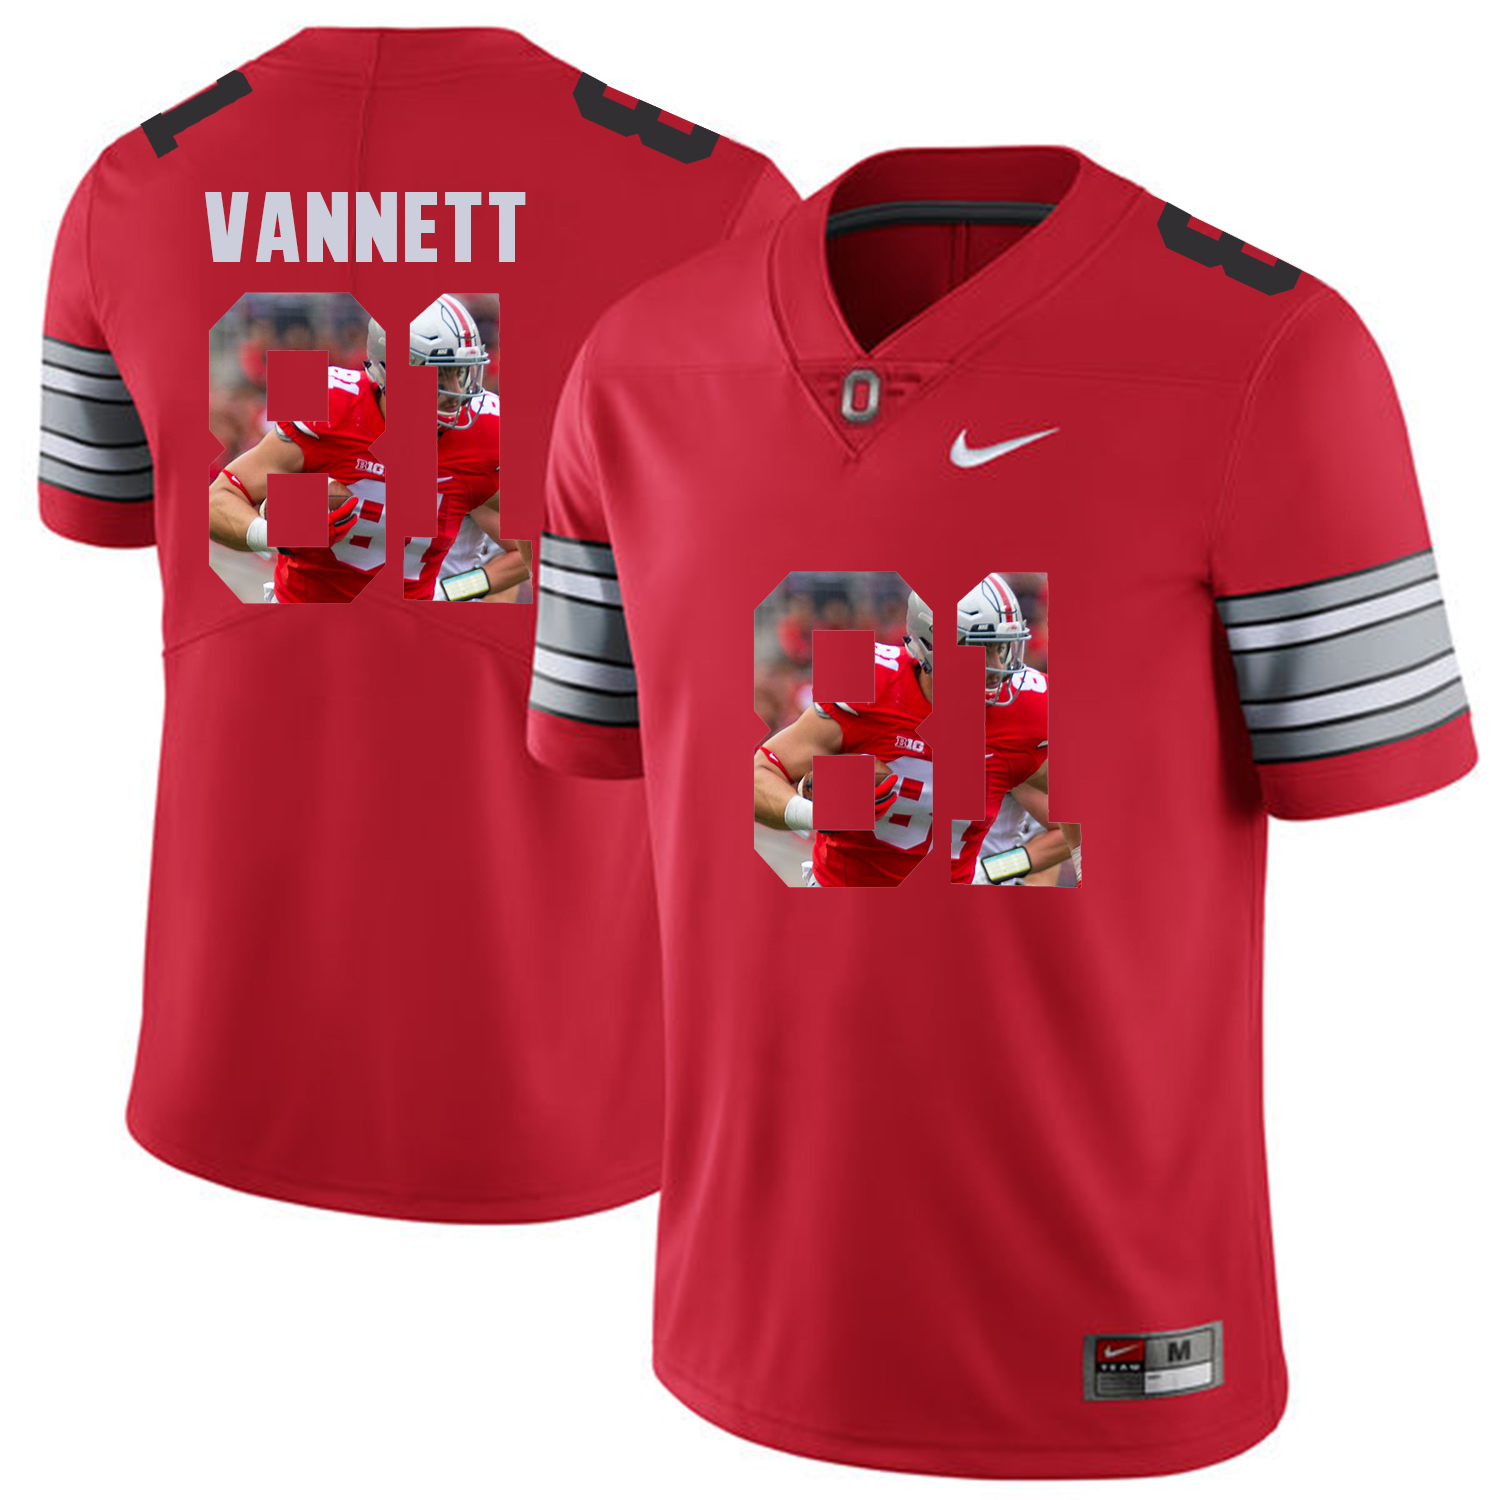 Men Ohio State 81 Vannett Red Fashion Edition Customized NCAA Jerseys